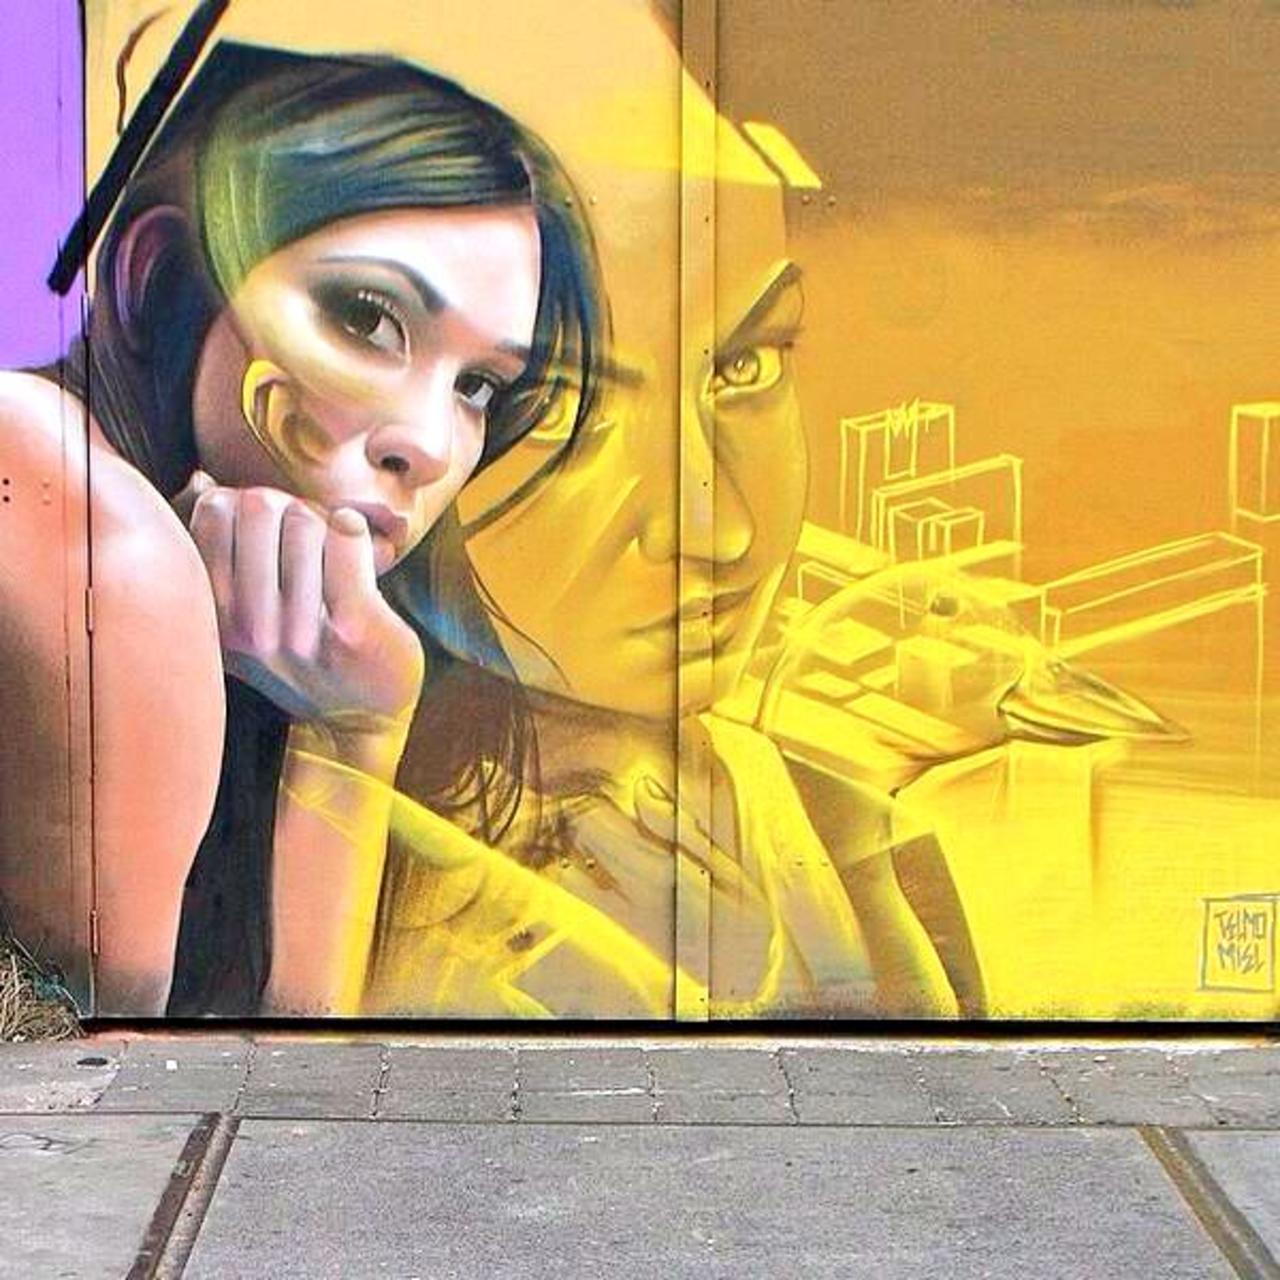 Telmomiel / "Windows"
#streetart #art #graffiti #mural http://t.co/apNN5FHCLj